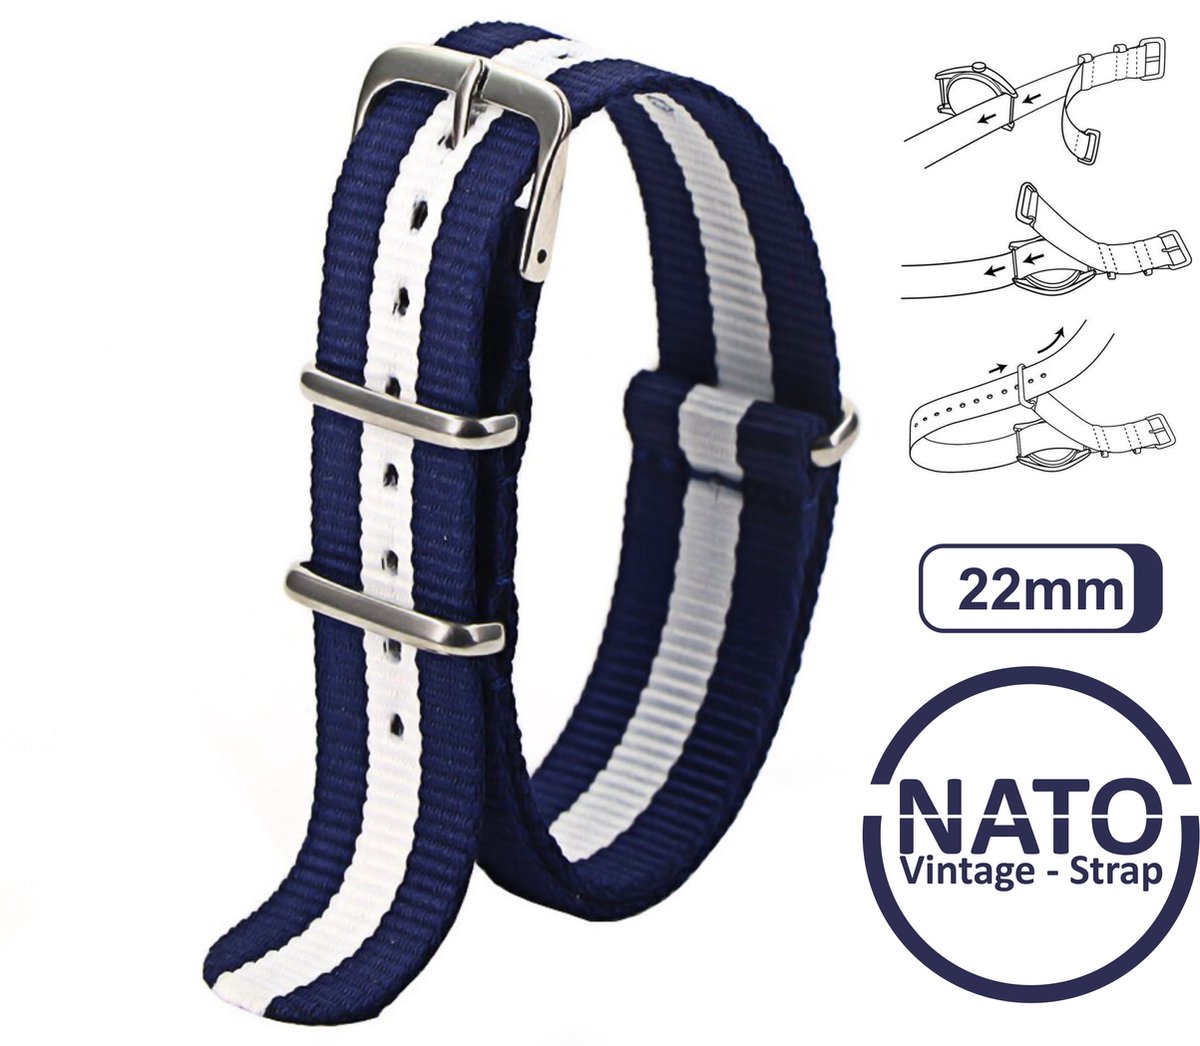 22mm Nato Strap Donkerblauw met Witte streep - Vintage James Bond - Nato Strap collectie - Mannen - Horlogebanden - Blue White Wit BLauw- 22 mm bandbreedte voor oa. Seiko Rolex Omega Casio en Citizen